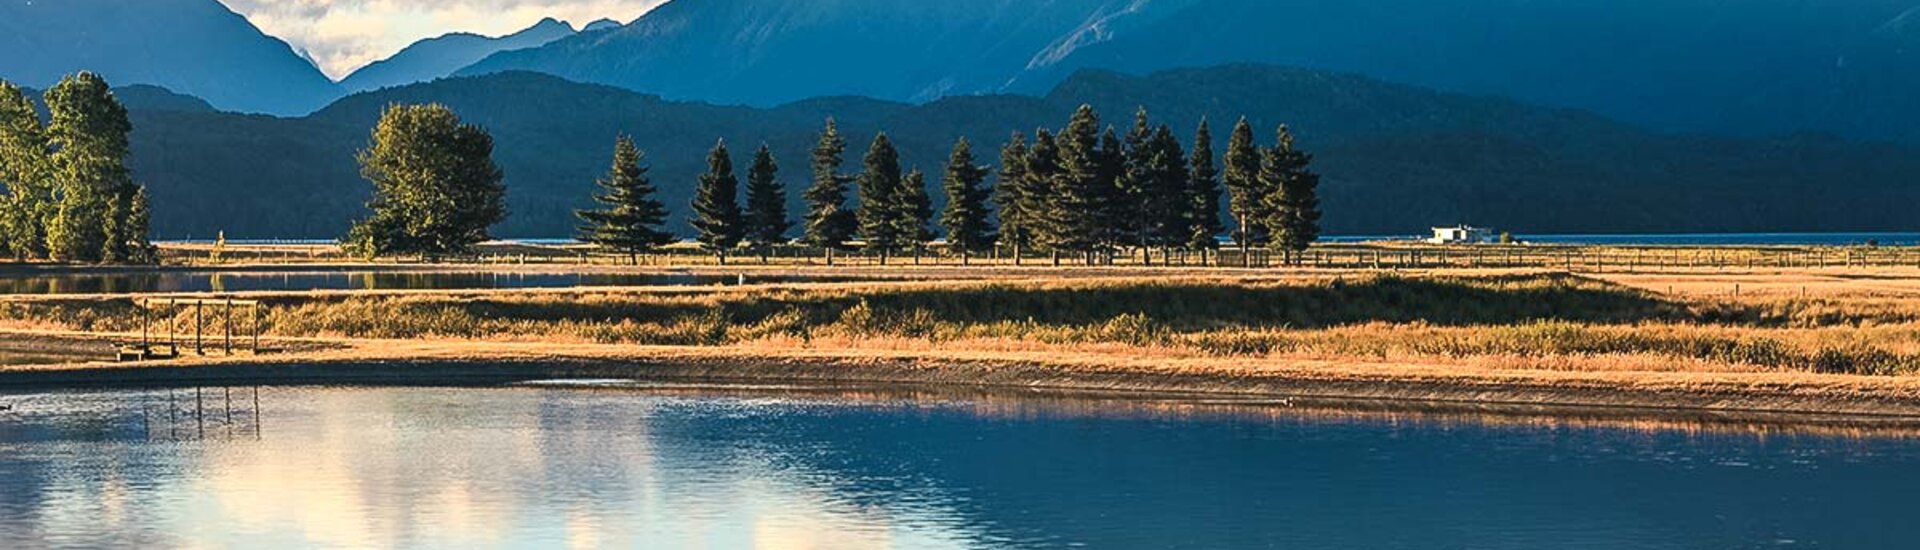 Landschaft in Te Anau, Neuseeland